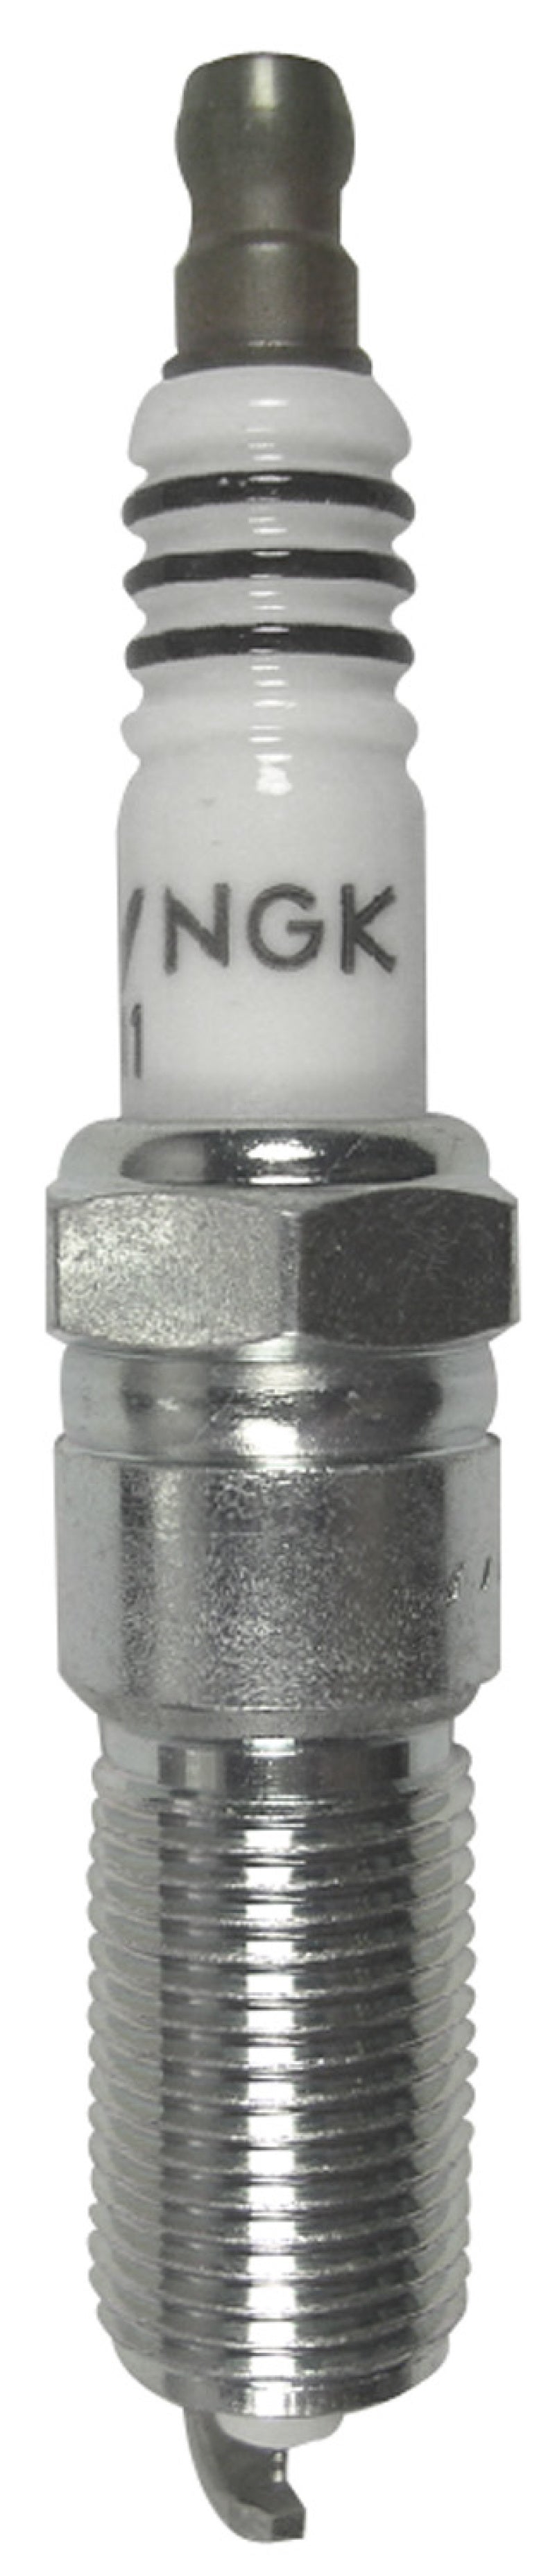 NGK Single Iridium Spark Plug Box of 4 (LZTR7AIX-13).